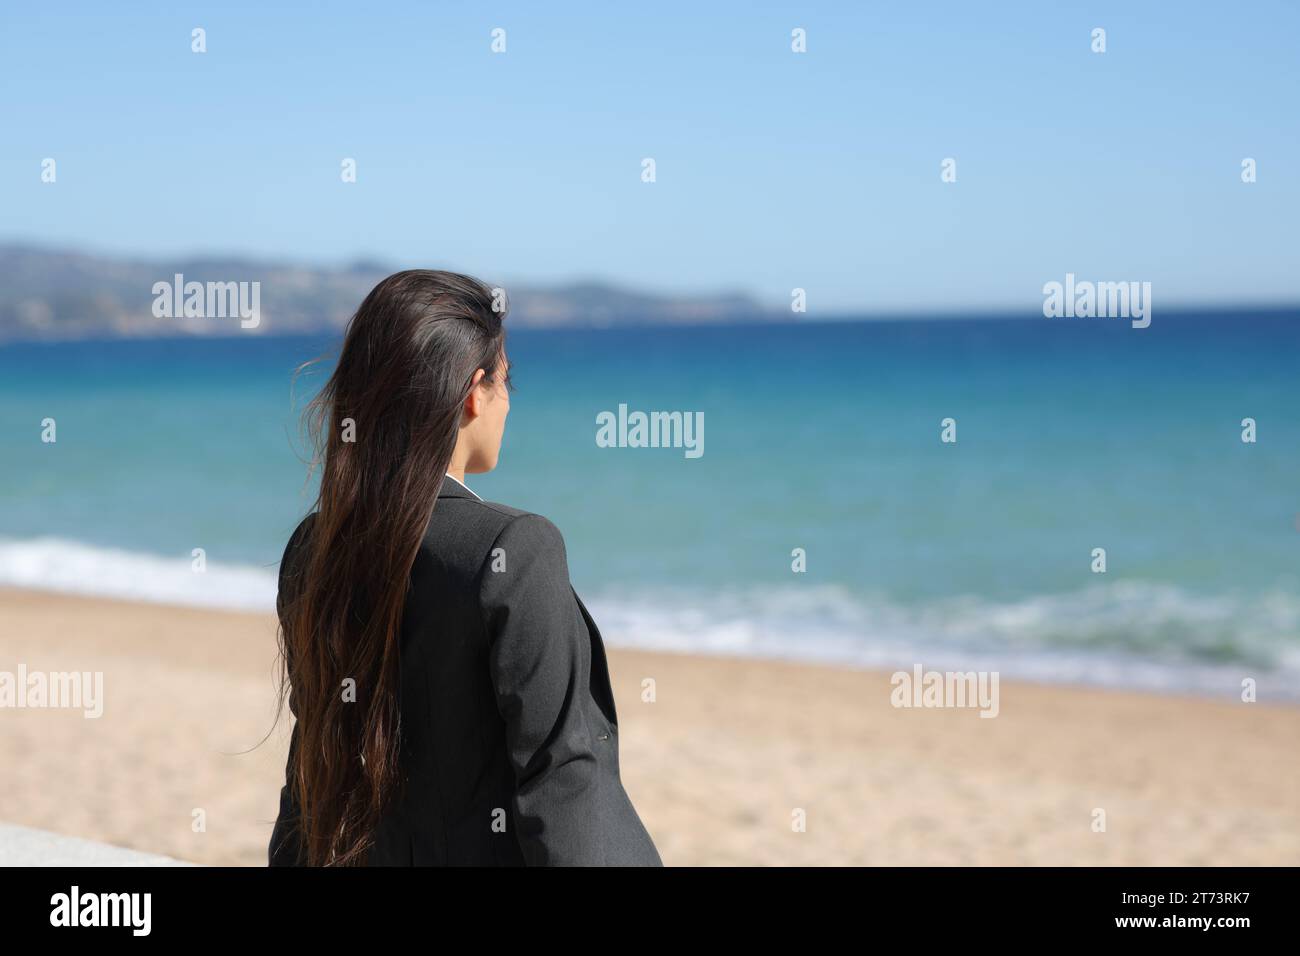 Individual ejecutivo relajante contemplando el océano sentado en la playa Foto de stock